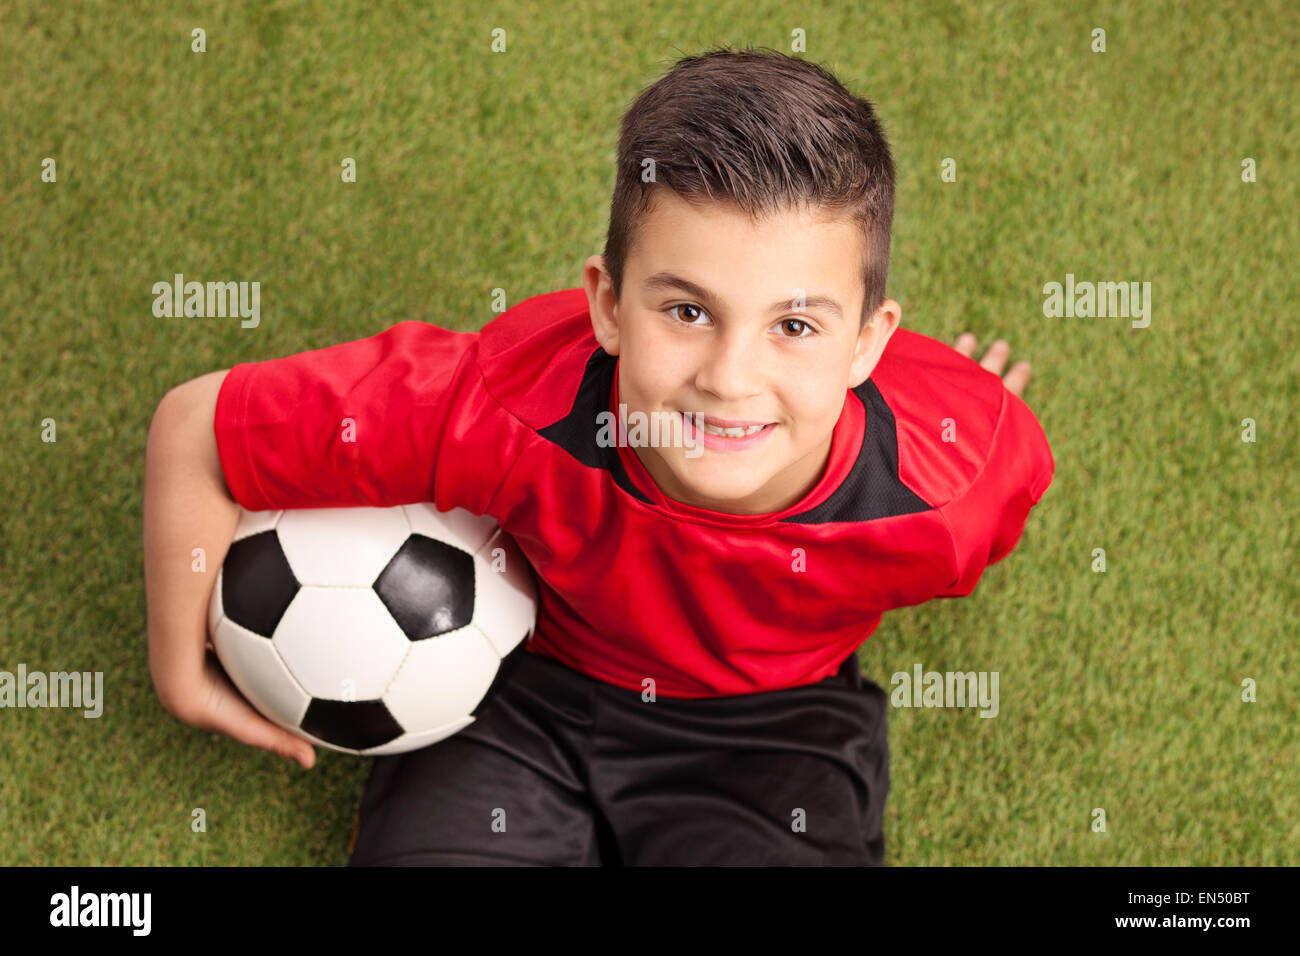 Alta angolazione di una junior giocatore di calcio in una maglia rossa seduta su erba tenendo una palla e sorridente Foto Stock